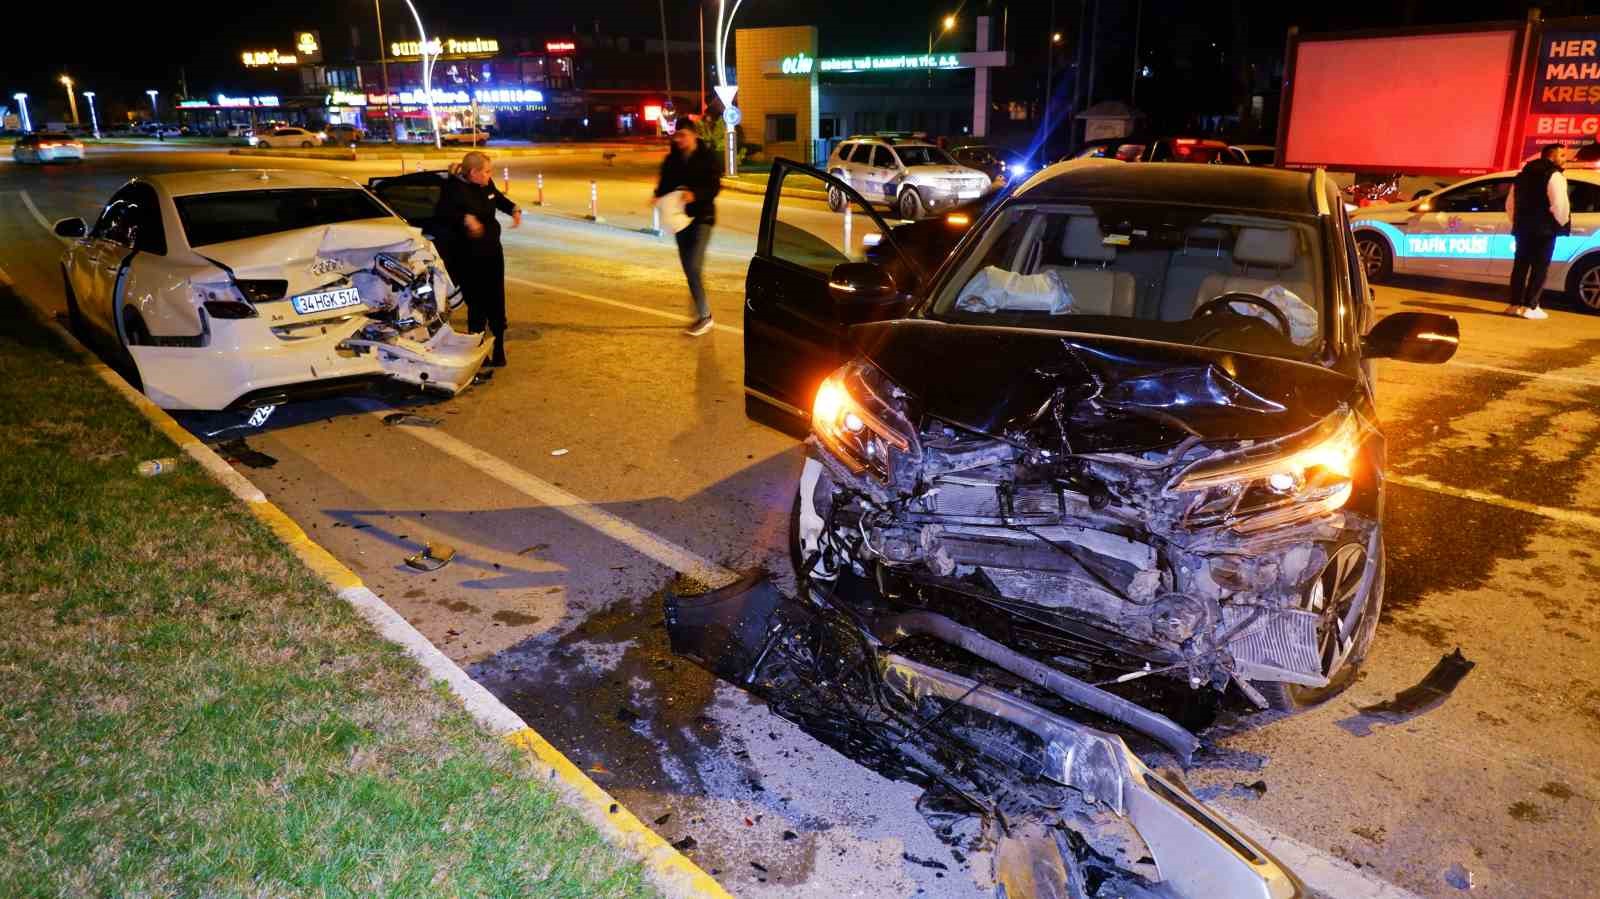 Edirne’de iki otomobil çarpıştı: 2 yaralı
